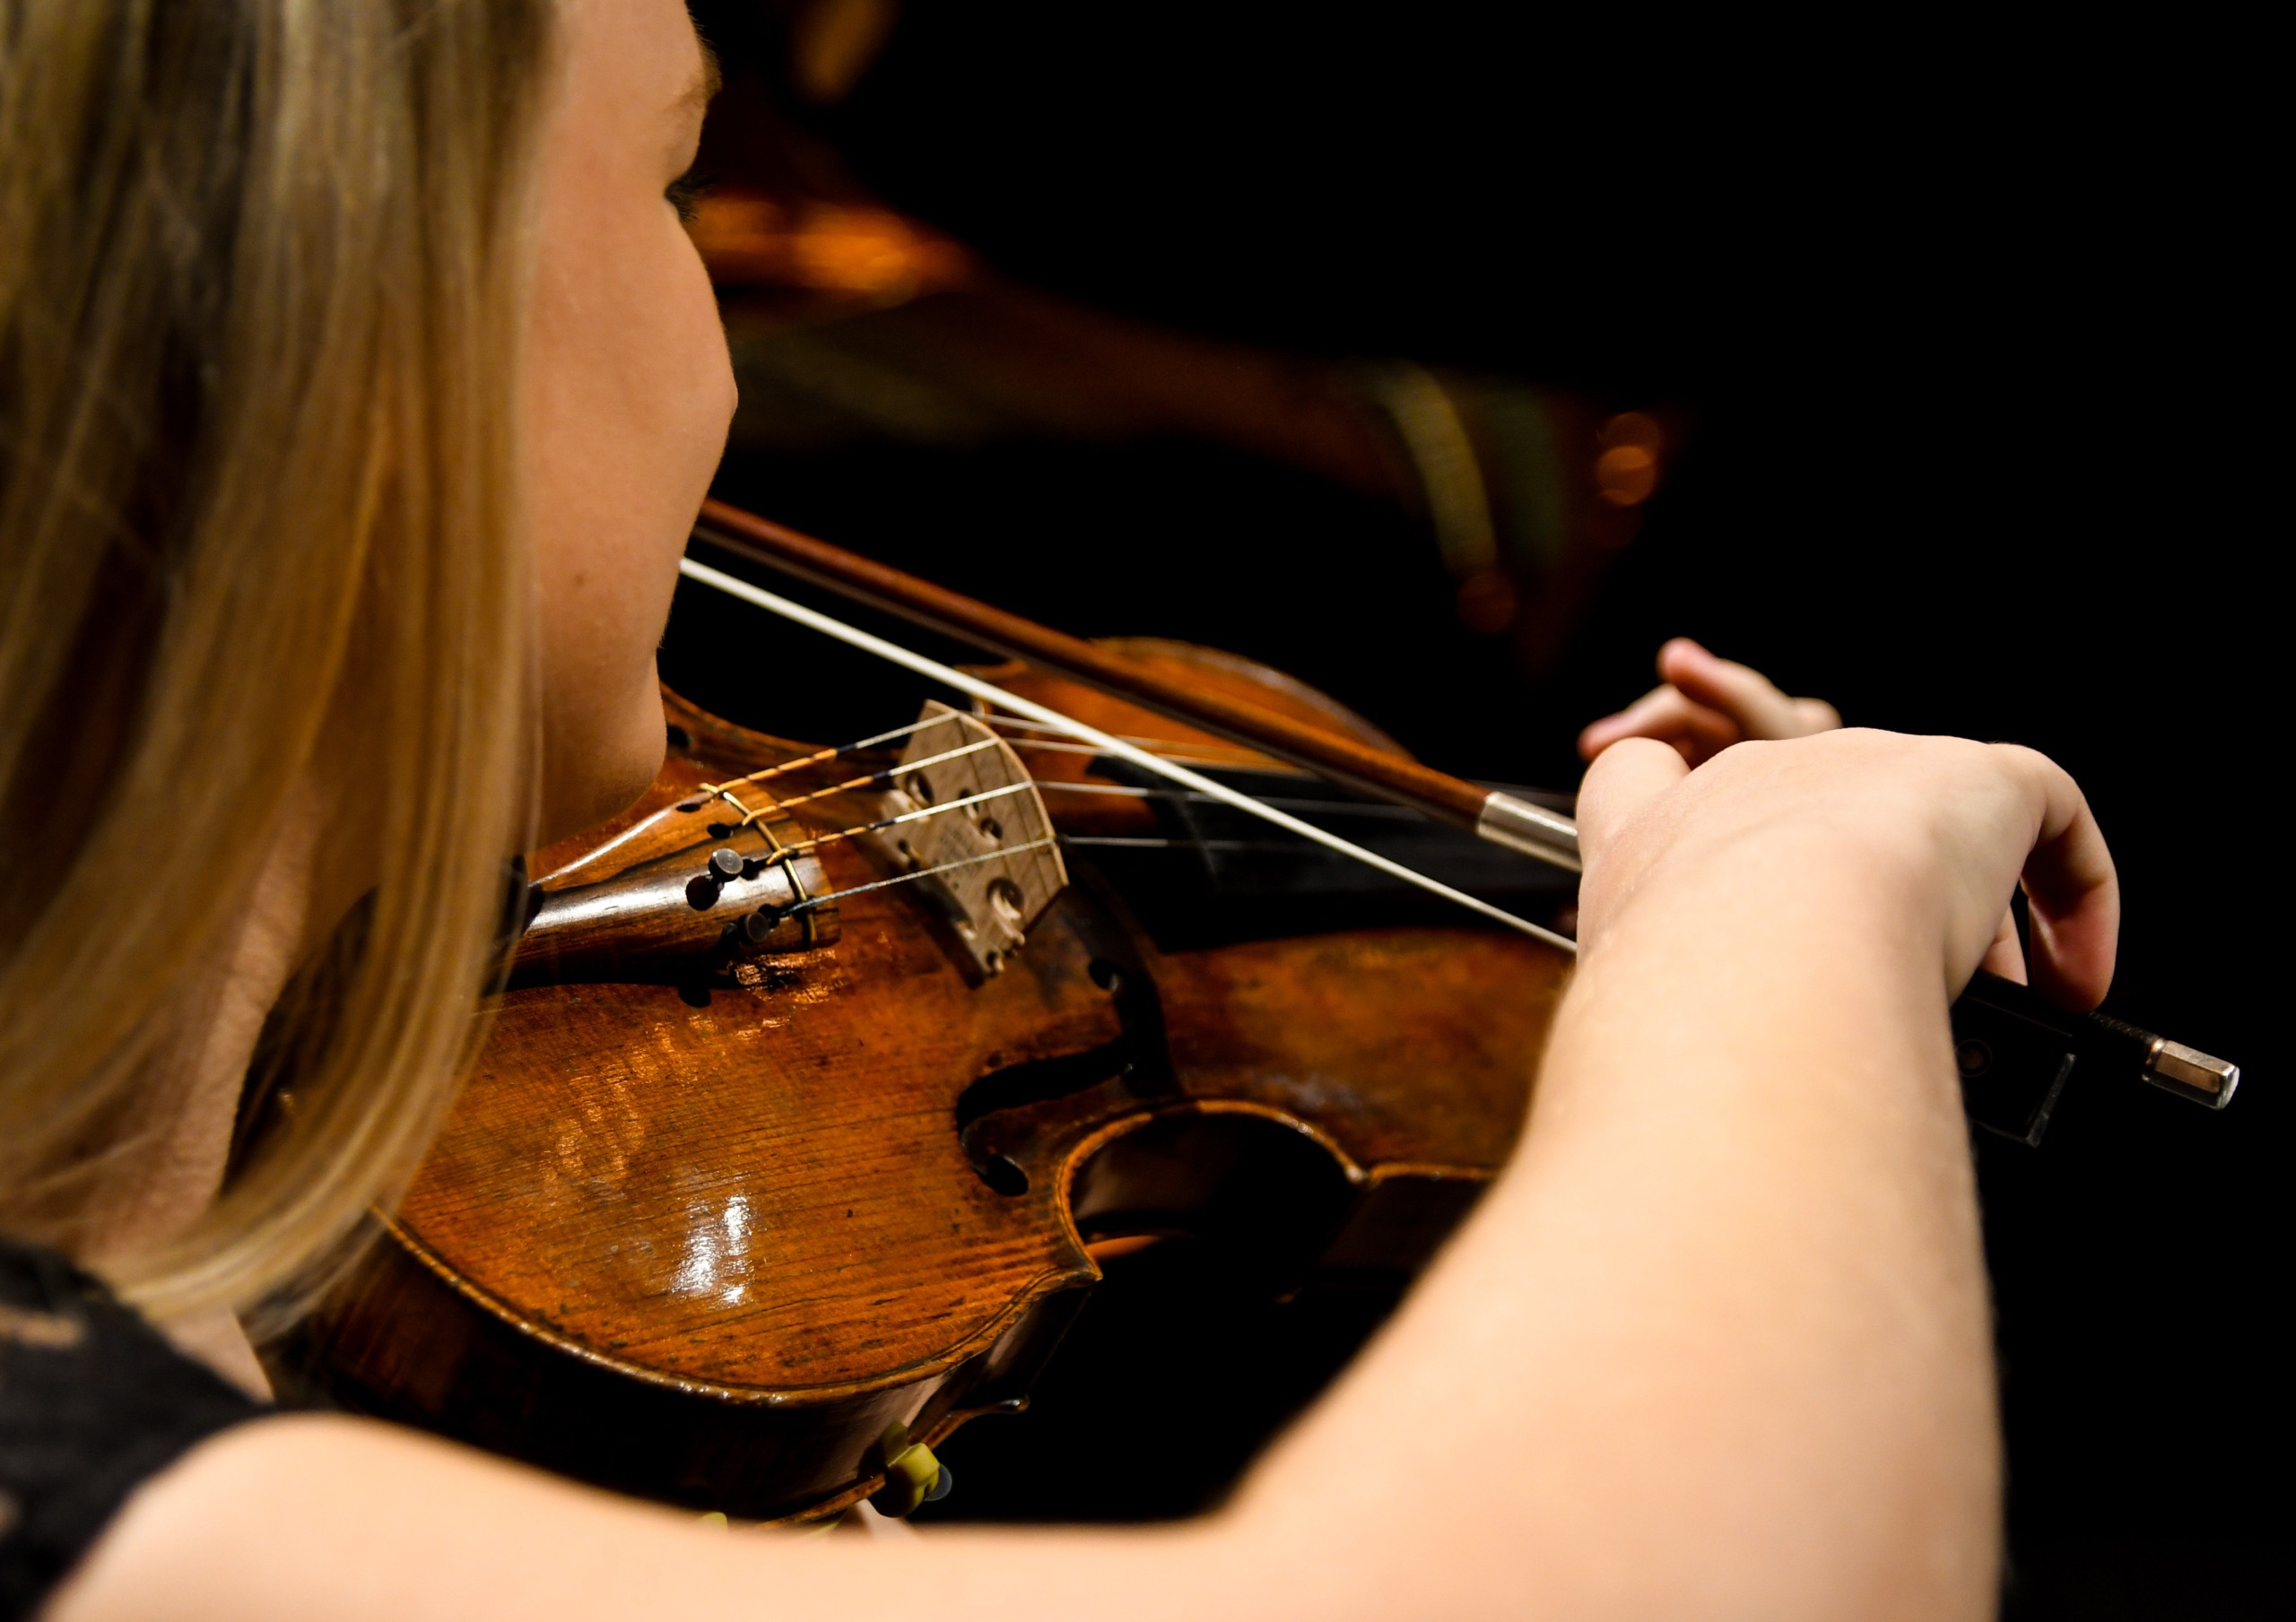 Blick über die Schulter einer Violinistin, die gerade ihr Instrument spielt